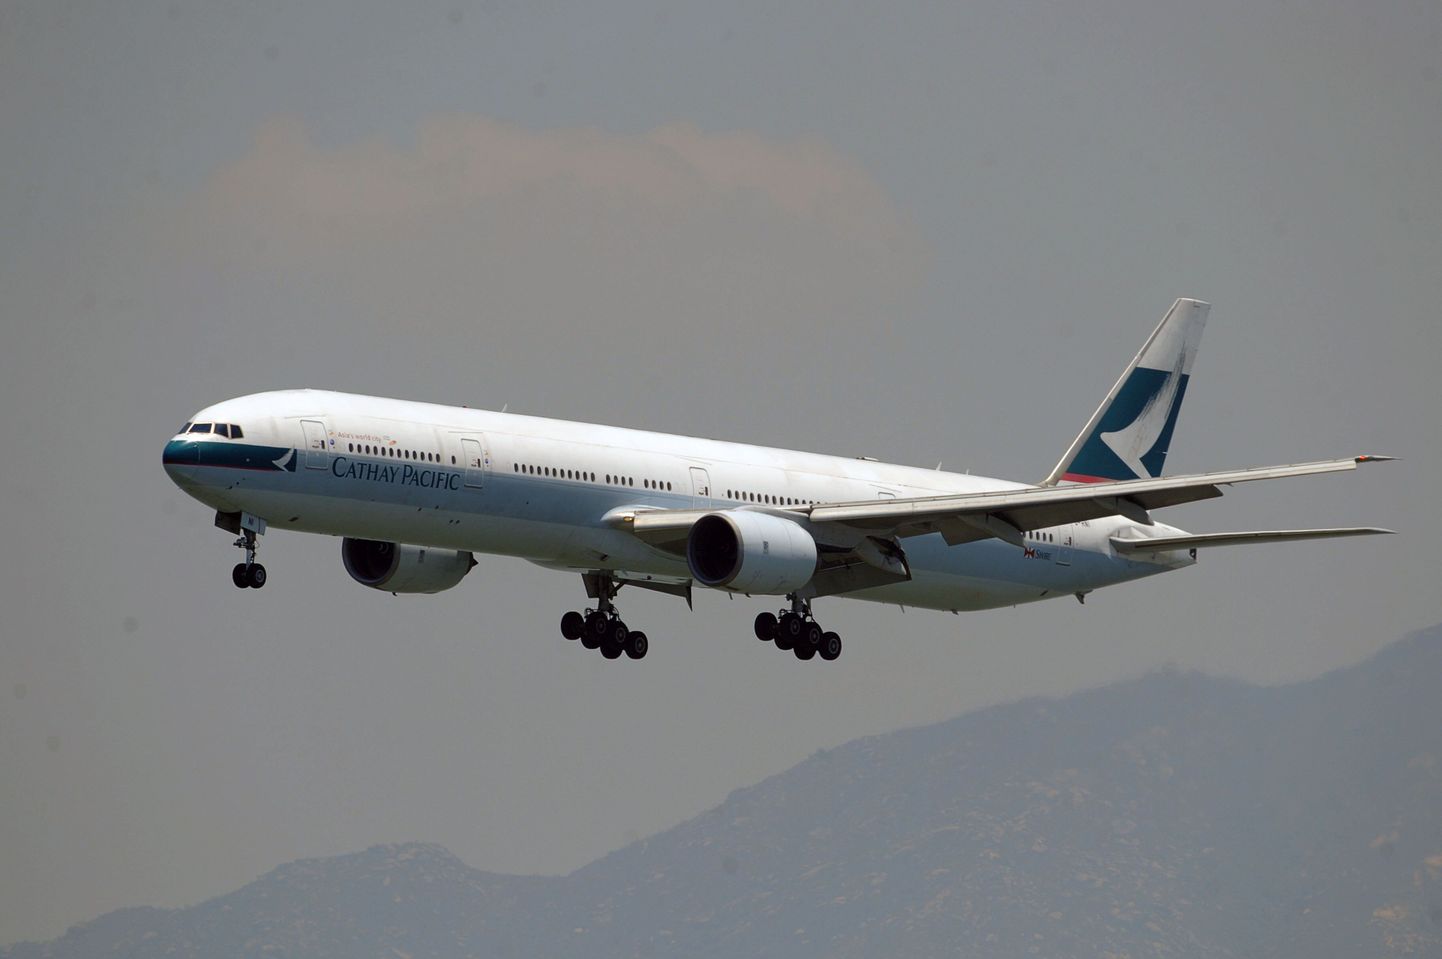 Cathay Pacificu lennuk 2010. aasta augustis maandumas Hongkongi lennuväljale.